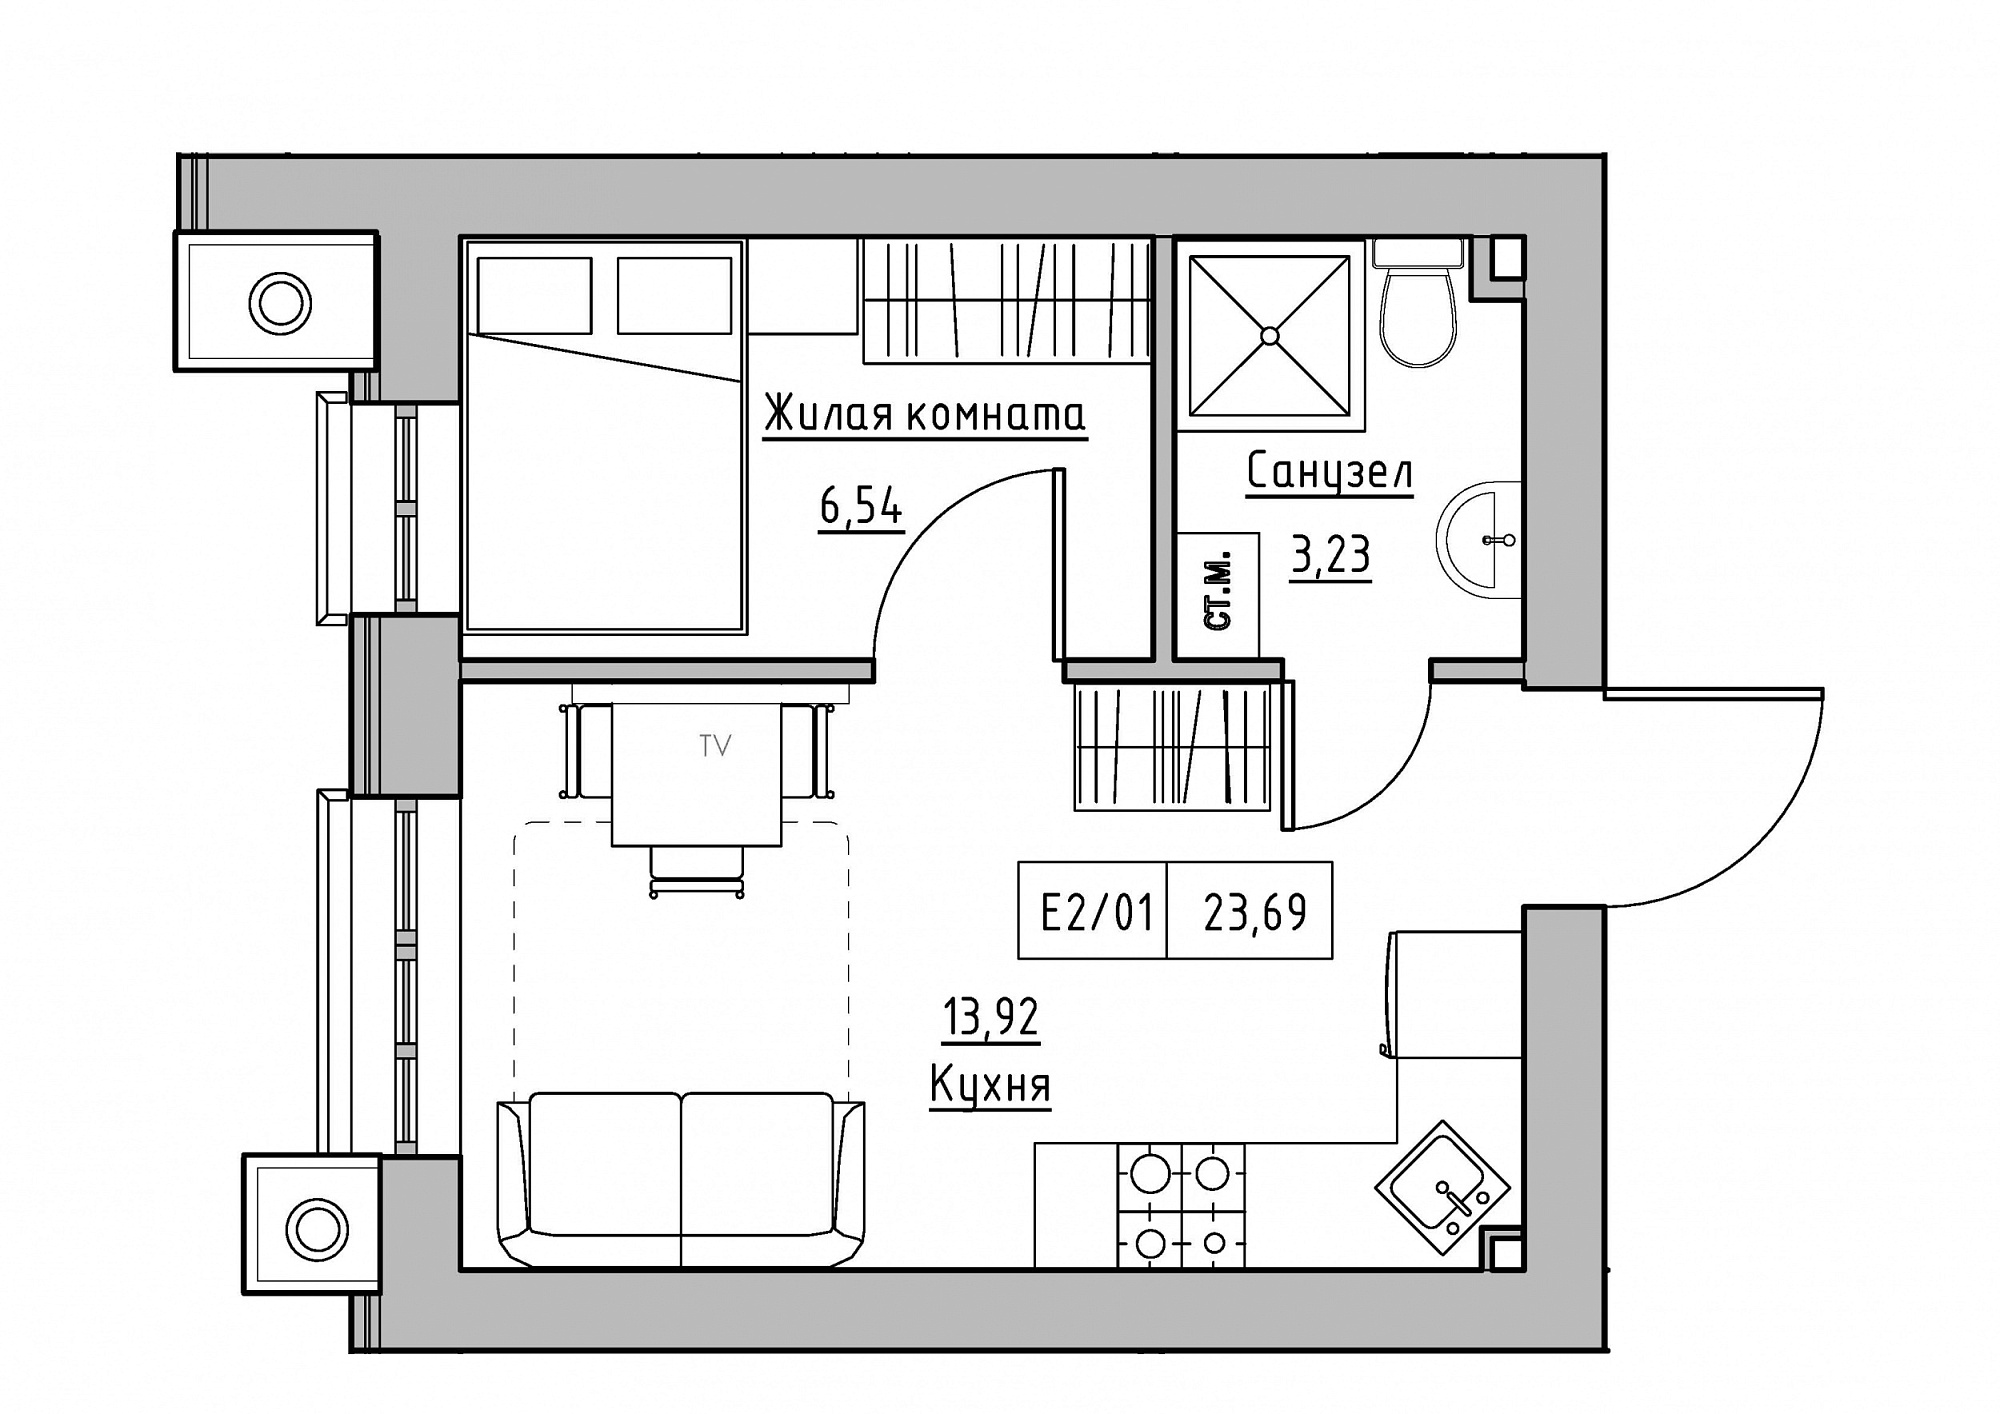 Планування 1-к квартира площею 23.69м2, KS-012-01/0009.